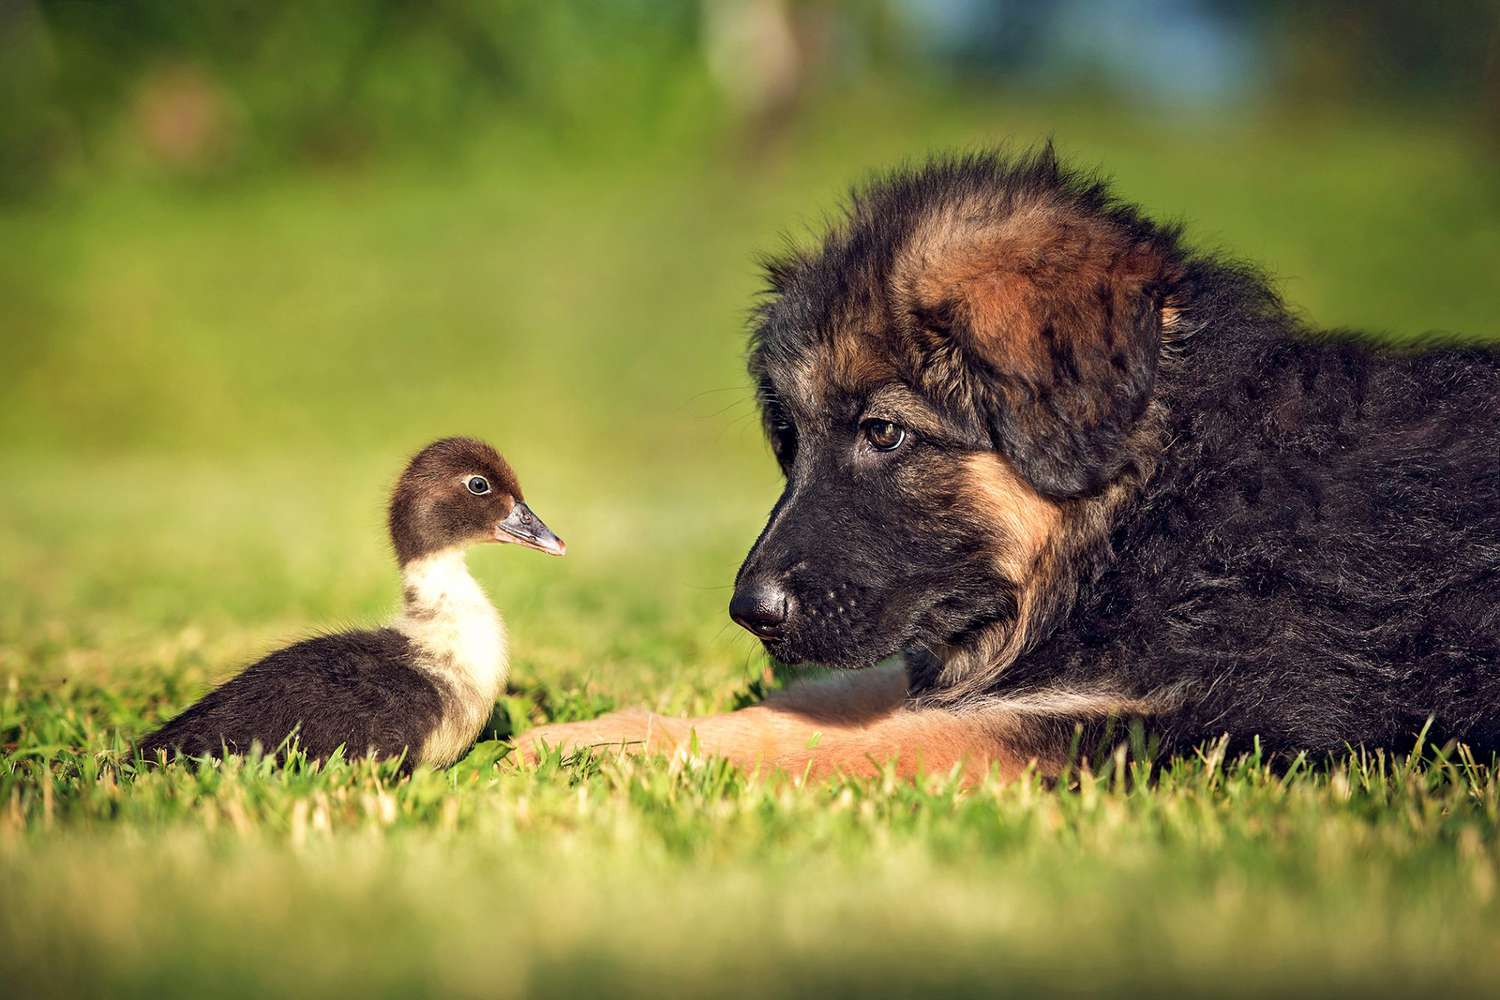 duckling with German shepherd puppy